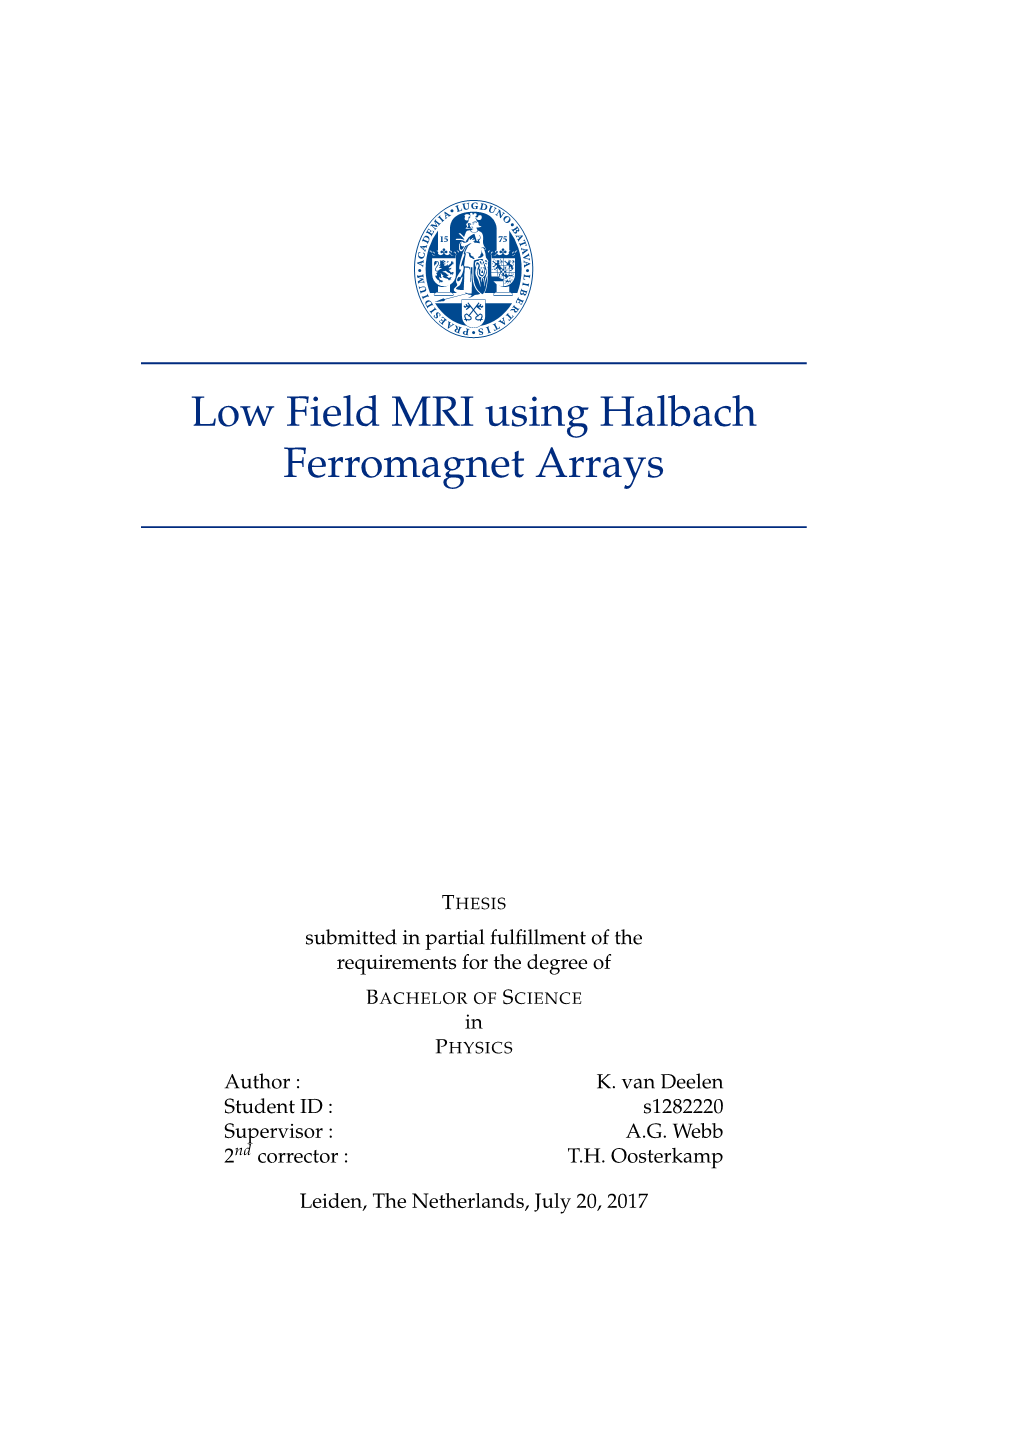 Low Field MRI Using Halbach Ferromagnet Arrays